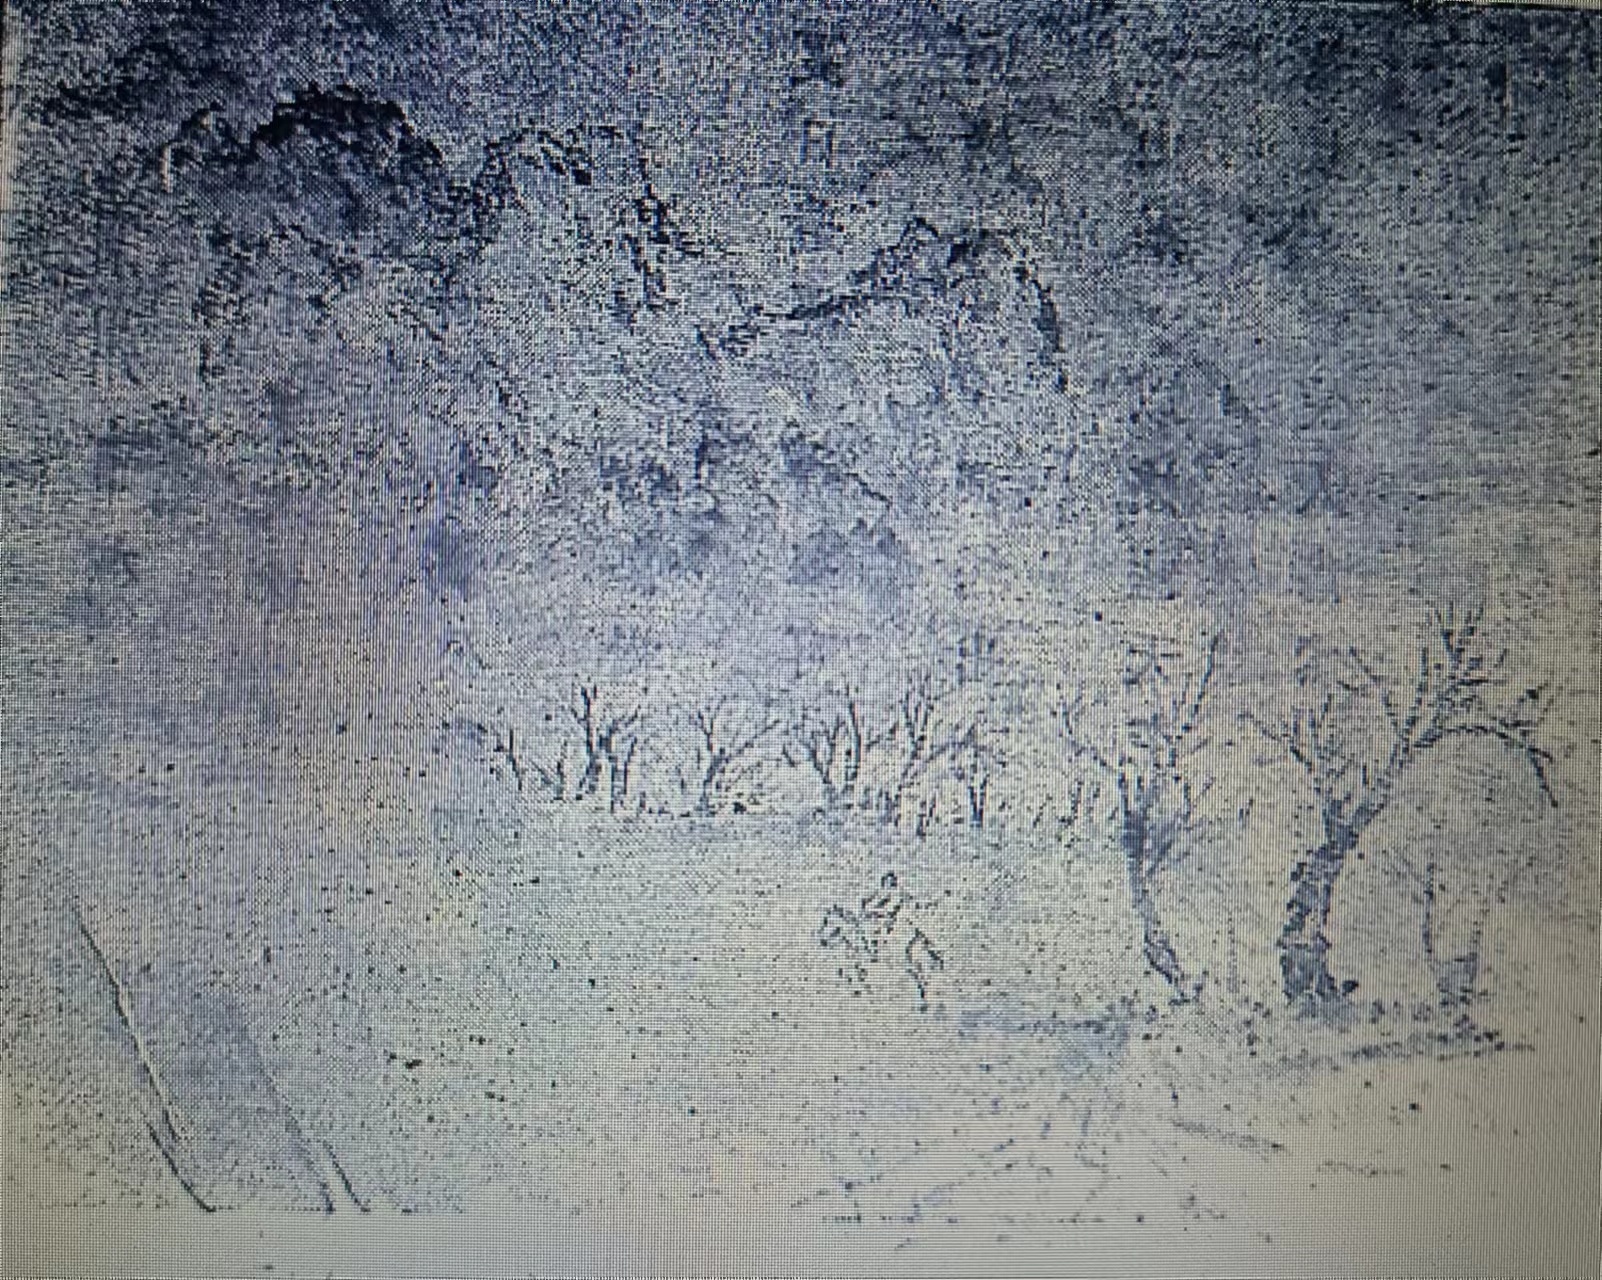 兰州永登附近丹霞地貌景观之速写（1942年作） 引自《赵望云西北旅行画记》